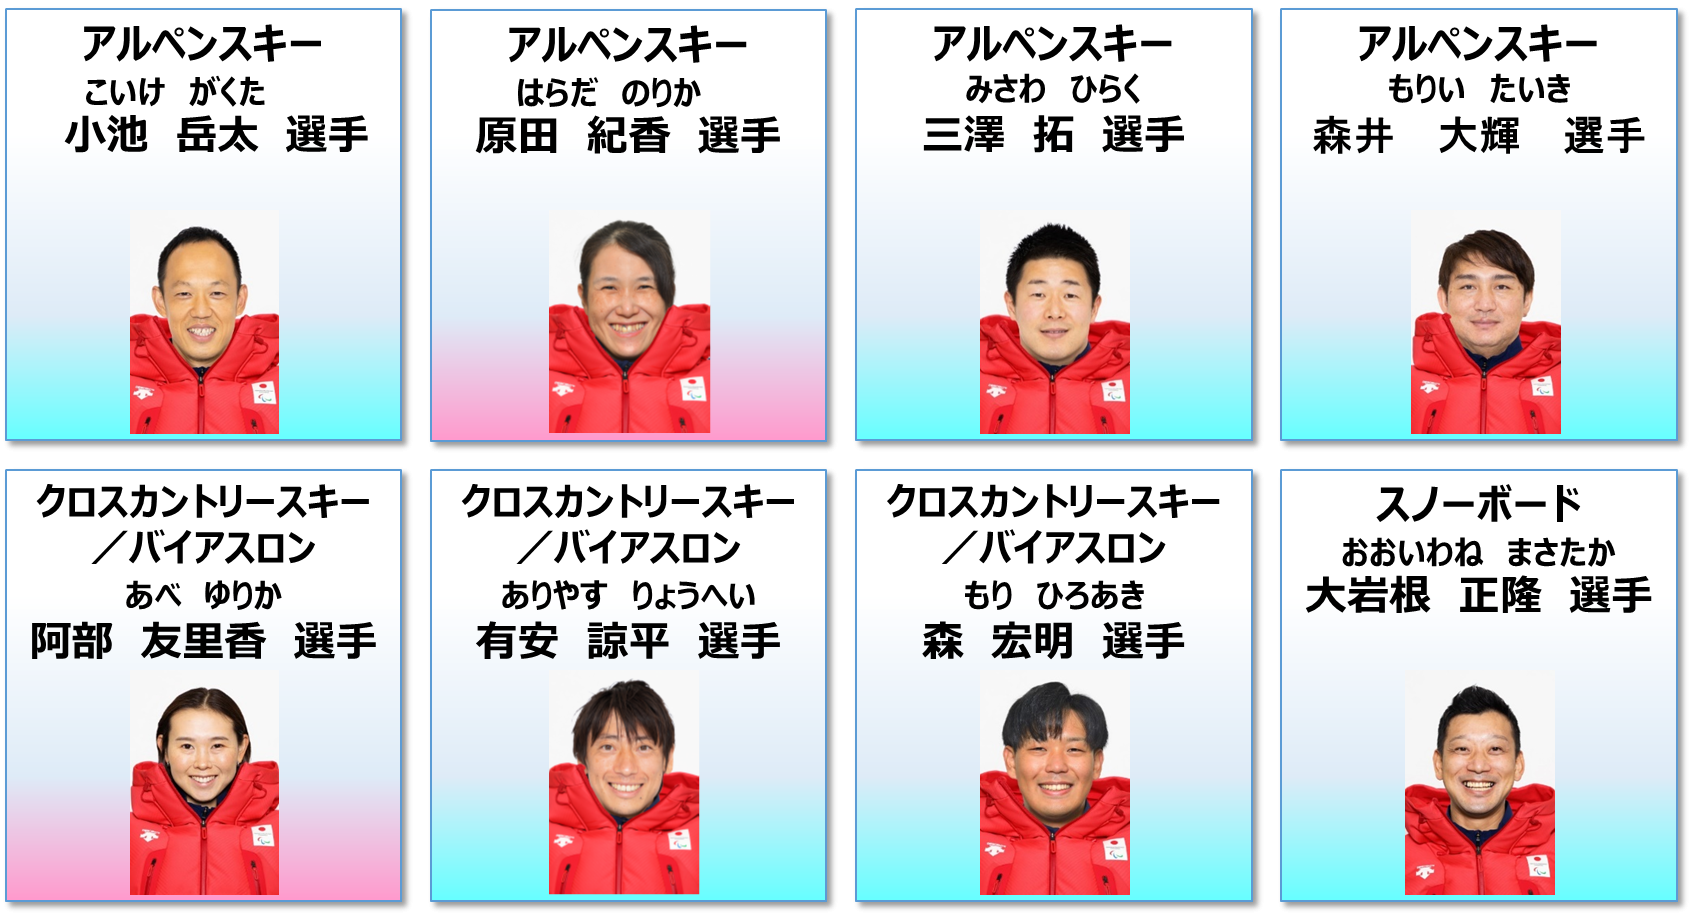 北京2022パラリンピック冬季競技大会（2022.3.4~3.13） 東京アスリート認定選手・メダル獲得、入賞結果